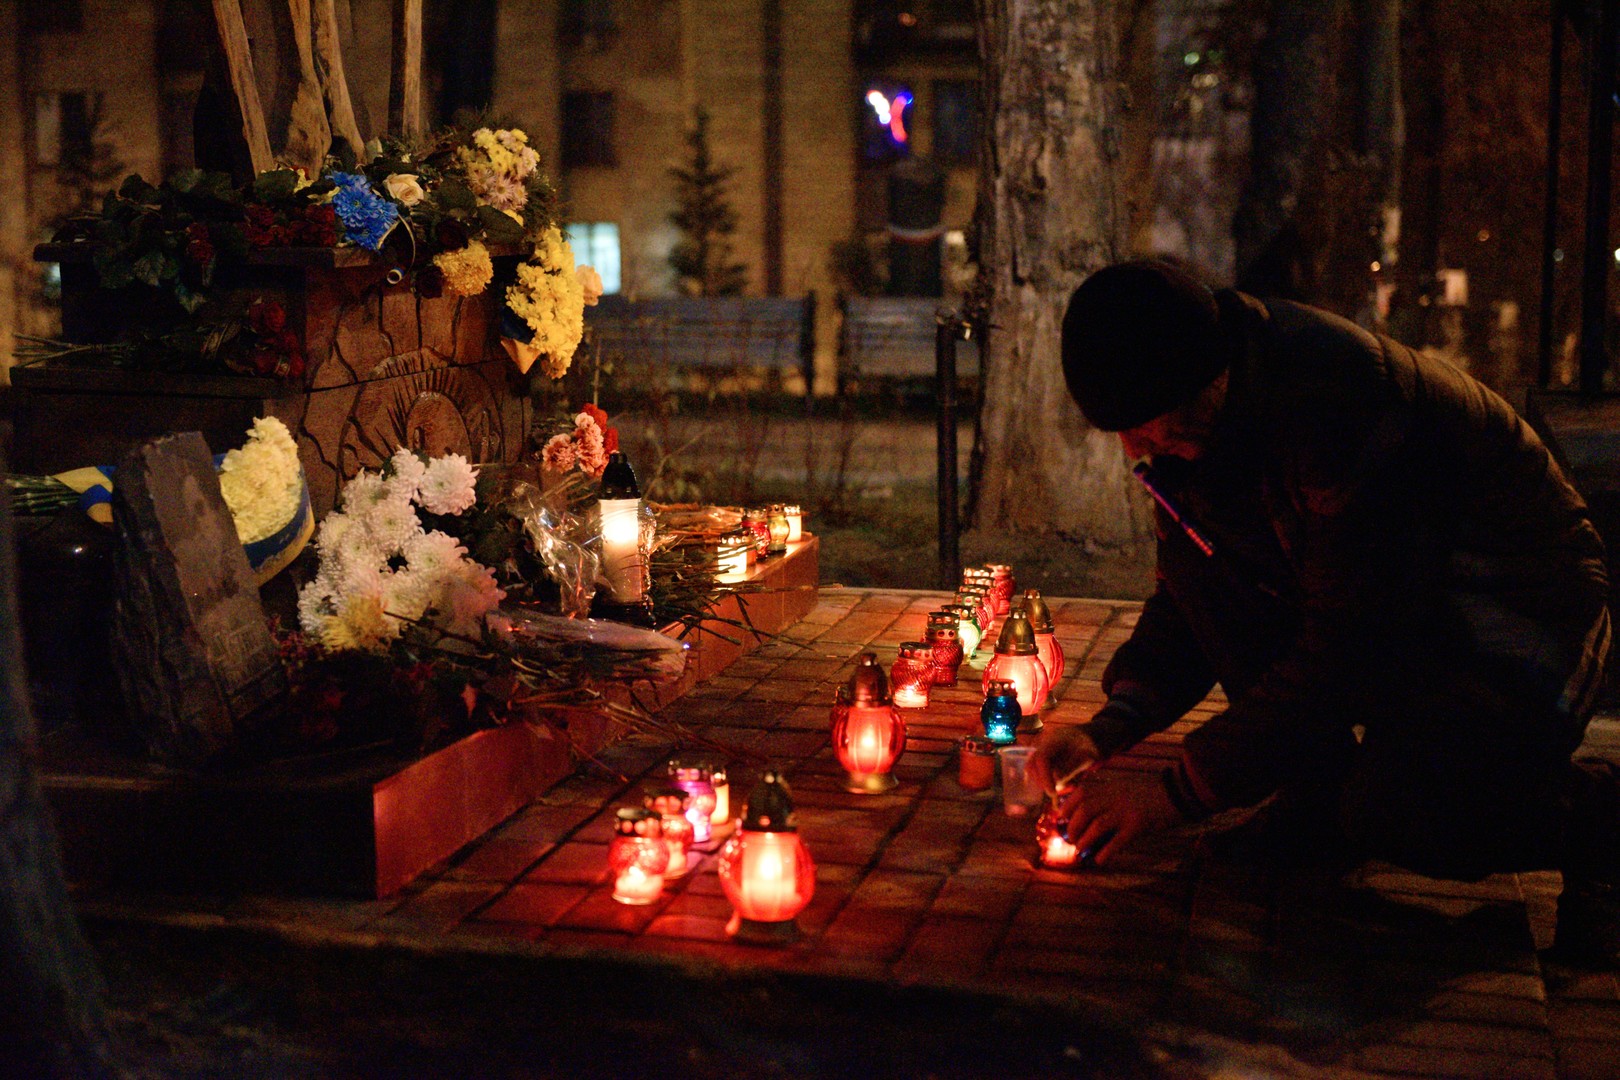 Pneus brûlés et vandalisme : comment Kiev a «célébré» le 3e anniversaire de Maïdan